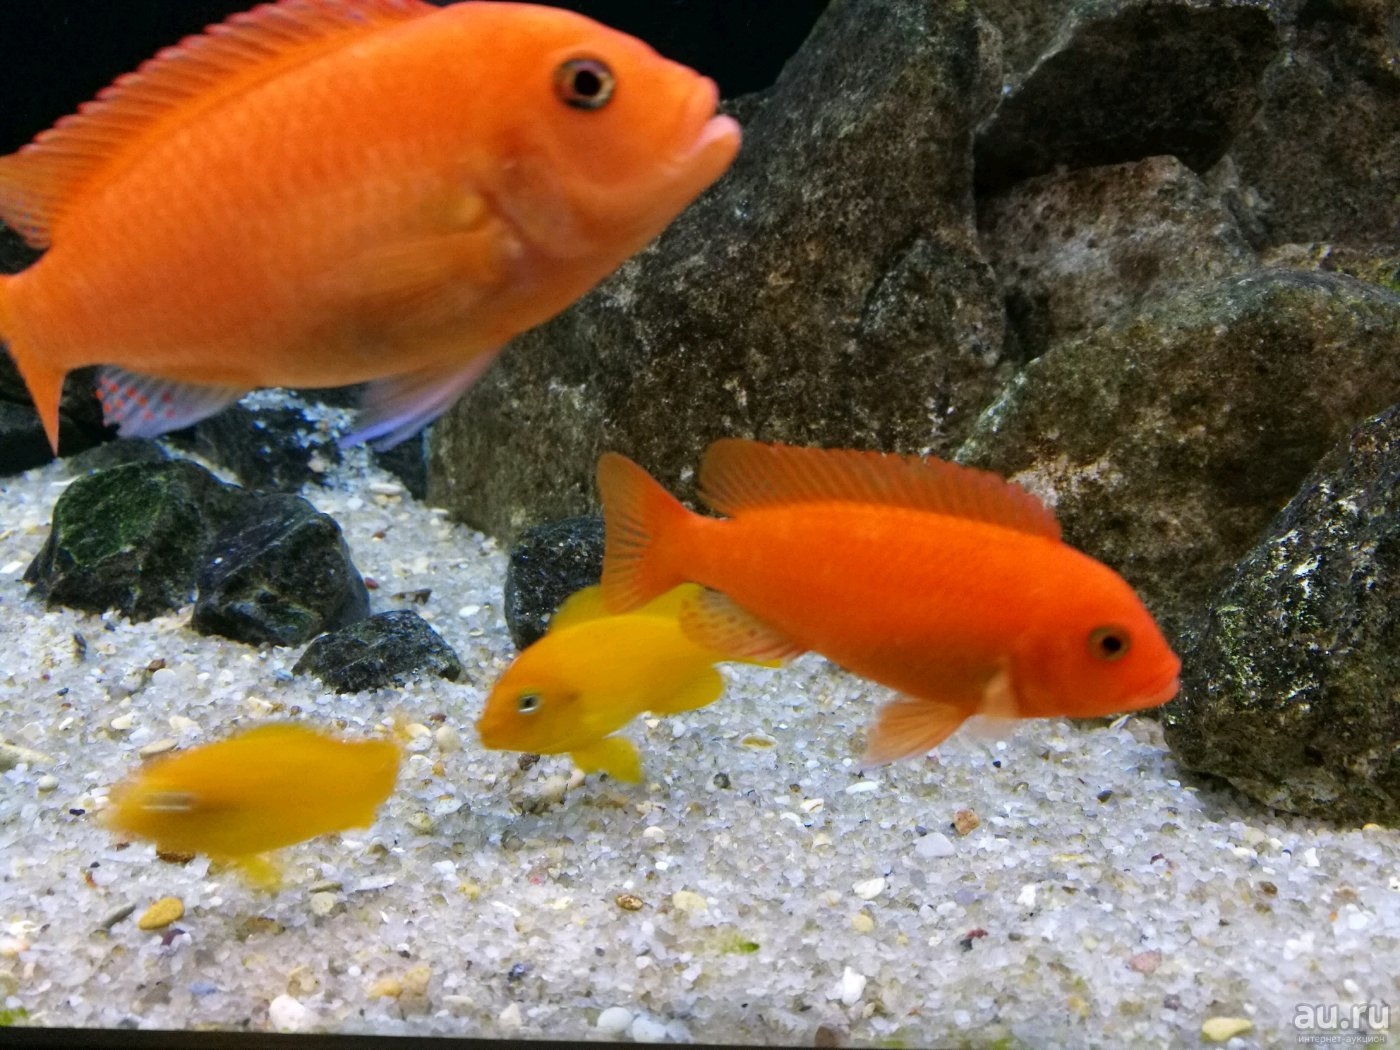 Оранжевая аквариумная рыбка. Псевдотрофеус Зебра красная. Цихлида Псевдотрофеус Зебра красная. Цихлида Псевдотрофеус Зебра. Цихлиды Псевдотрофеус Зебра.